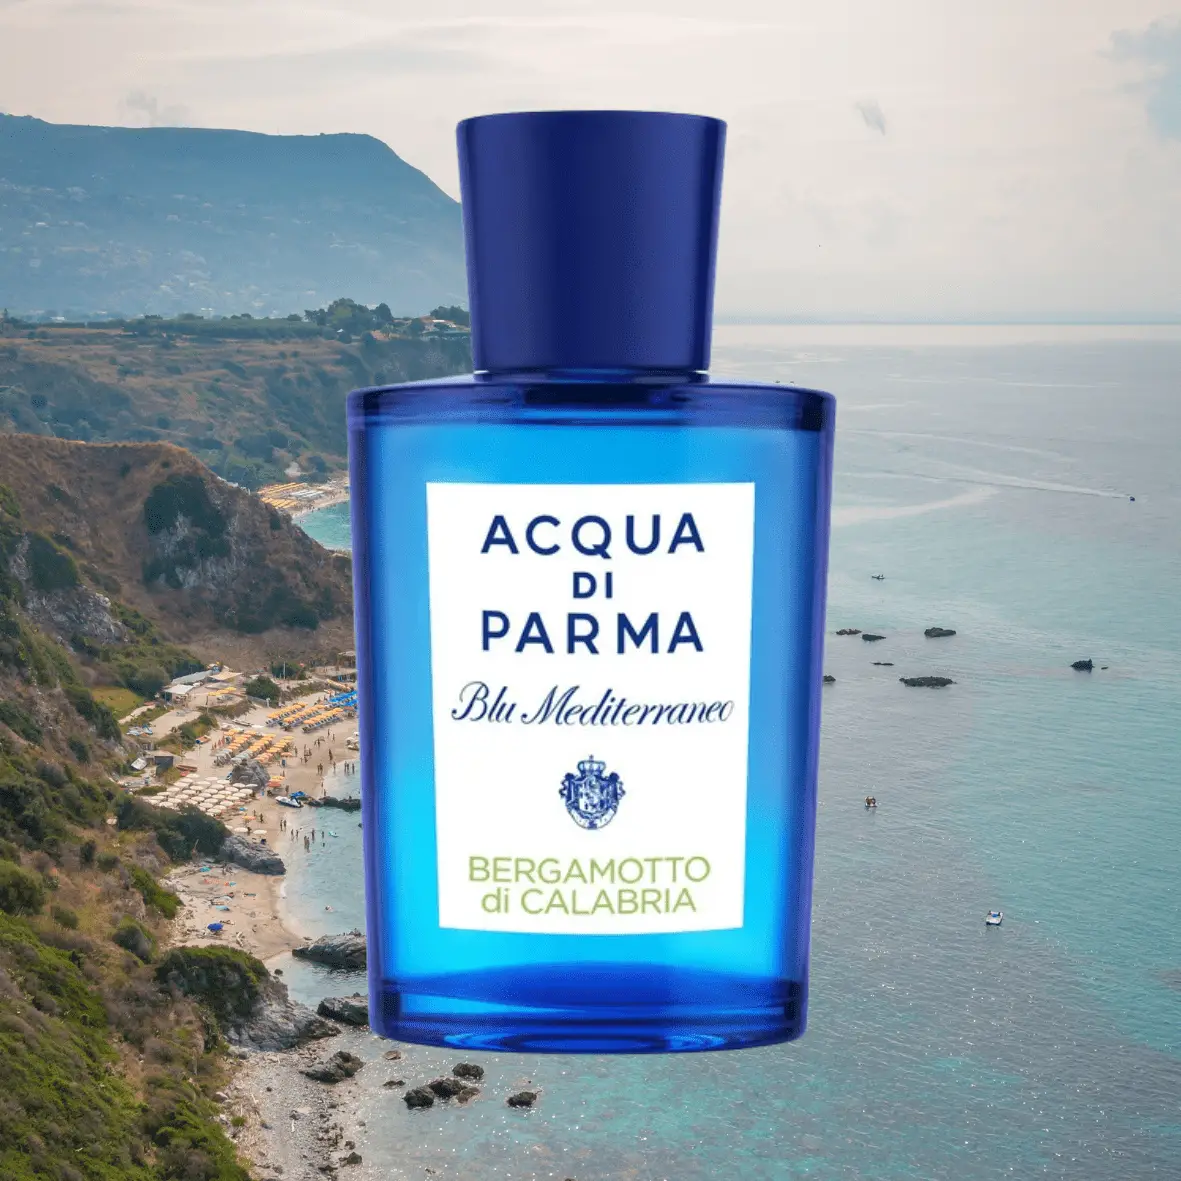 Nước hoa Bergamot tốt nhất cho nam và nữ Acqua di Parma Blu Mediterraneo Bergamotto di Calabria